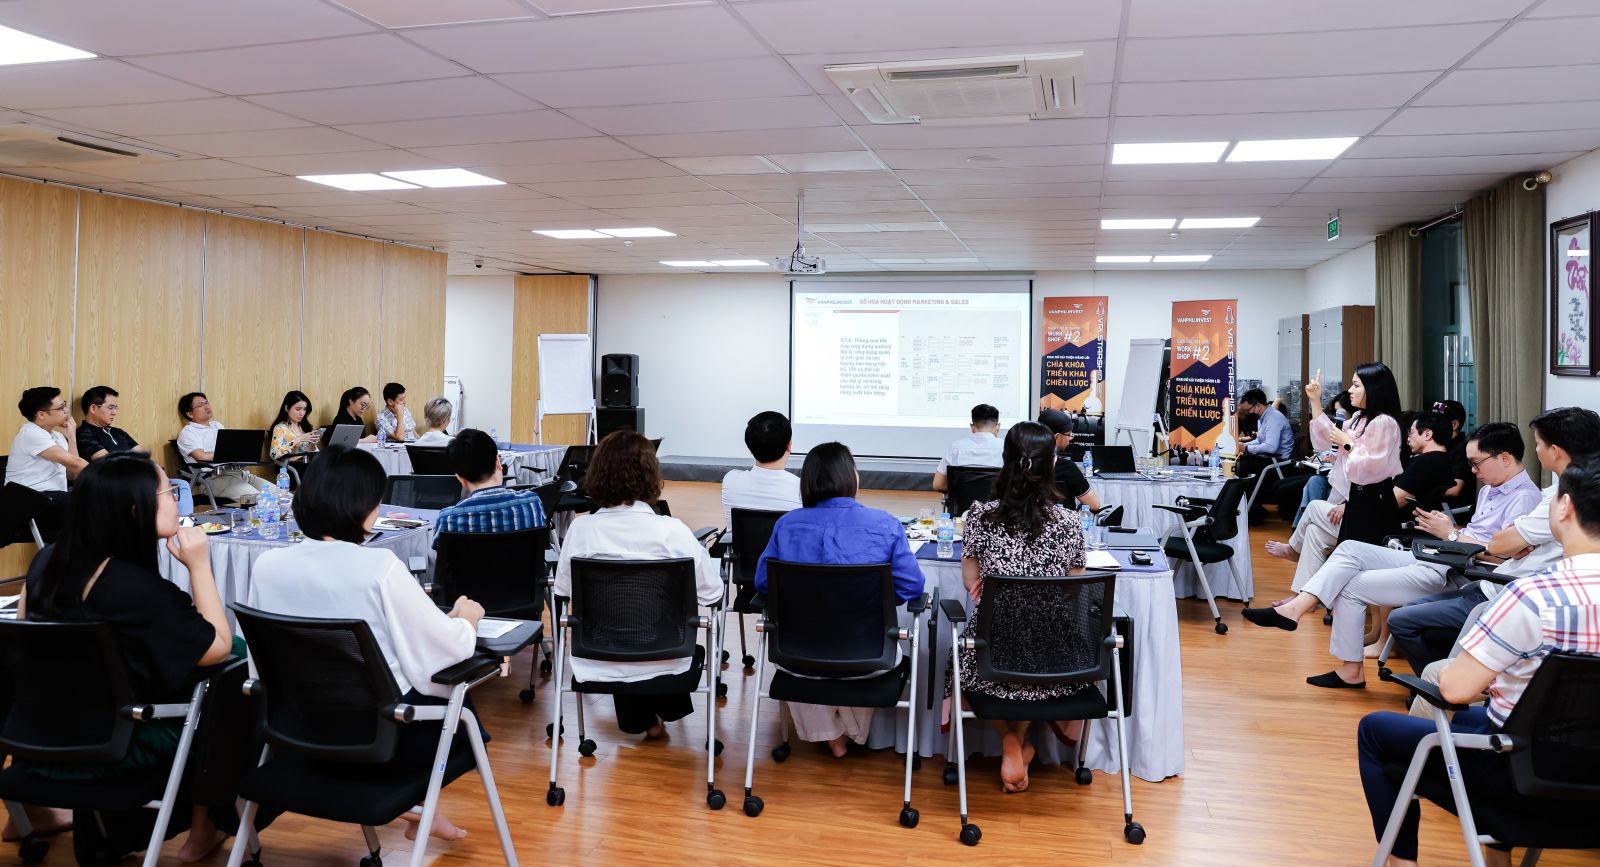 Đào tạo nội bộ là hoạt động được tổ chức thường xuyên tại Văn Phú - Invest